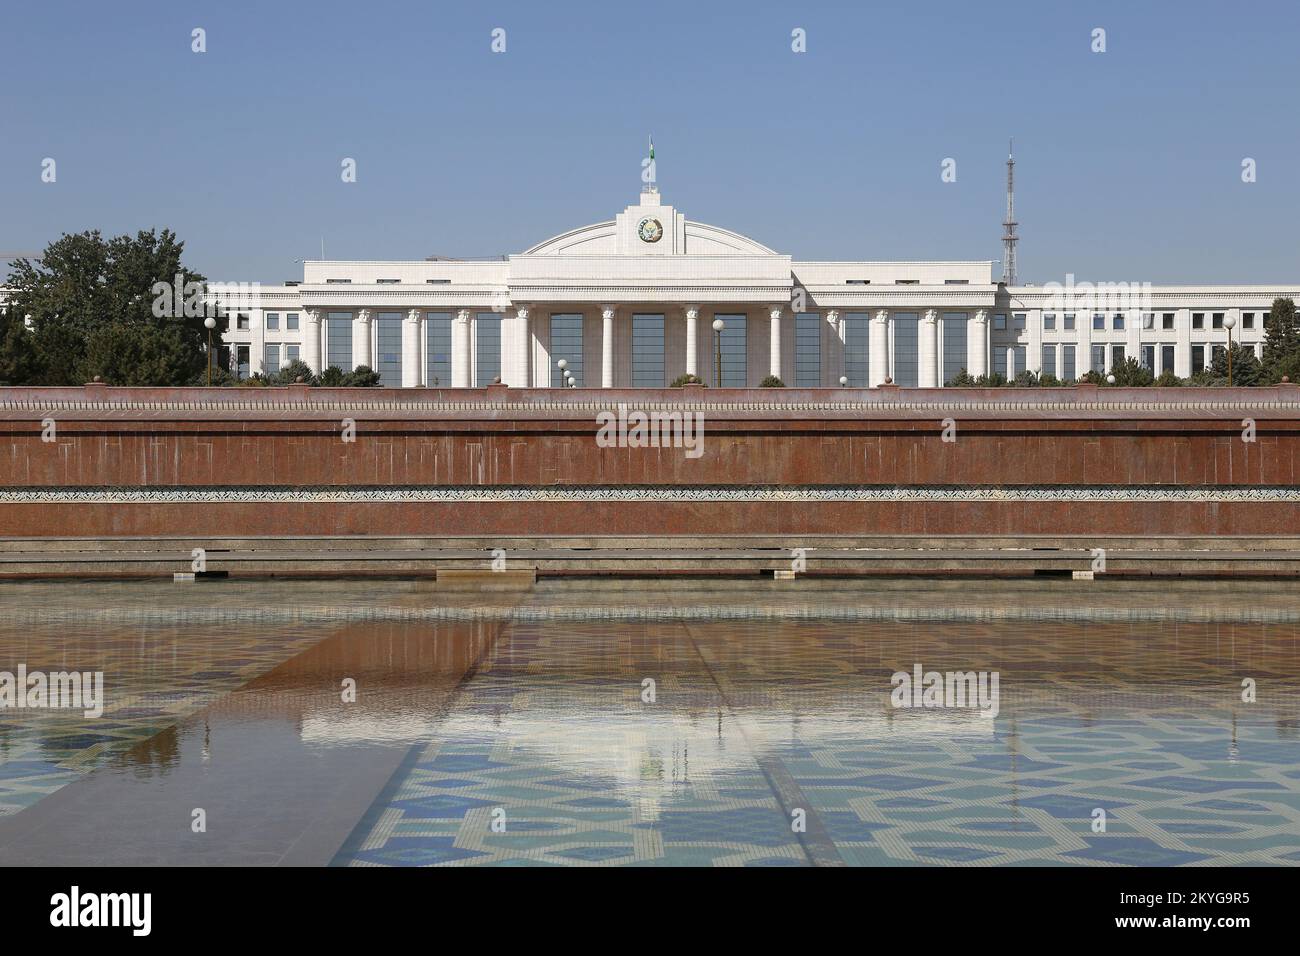 Presidential Palace, Mustakillik Maydoni (Independence Square), Sharaf Rashidov Avenue, Central Tashkent, Tashkent Province, Uzbekistan, Central Asia Stock Photo